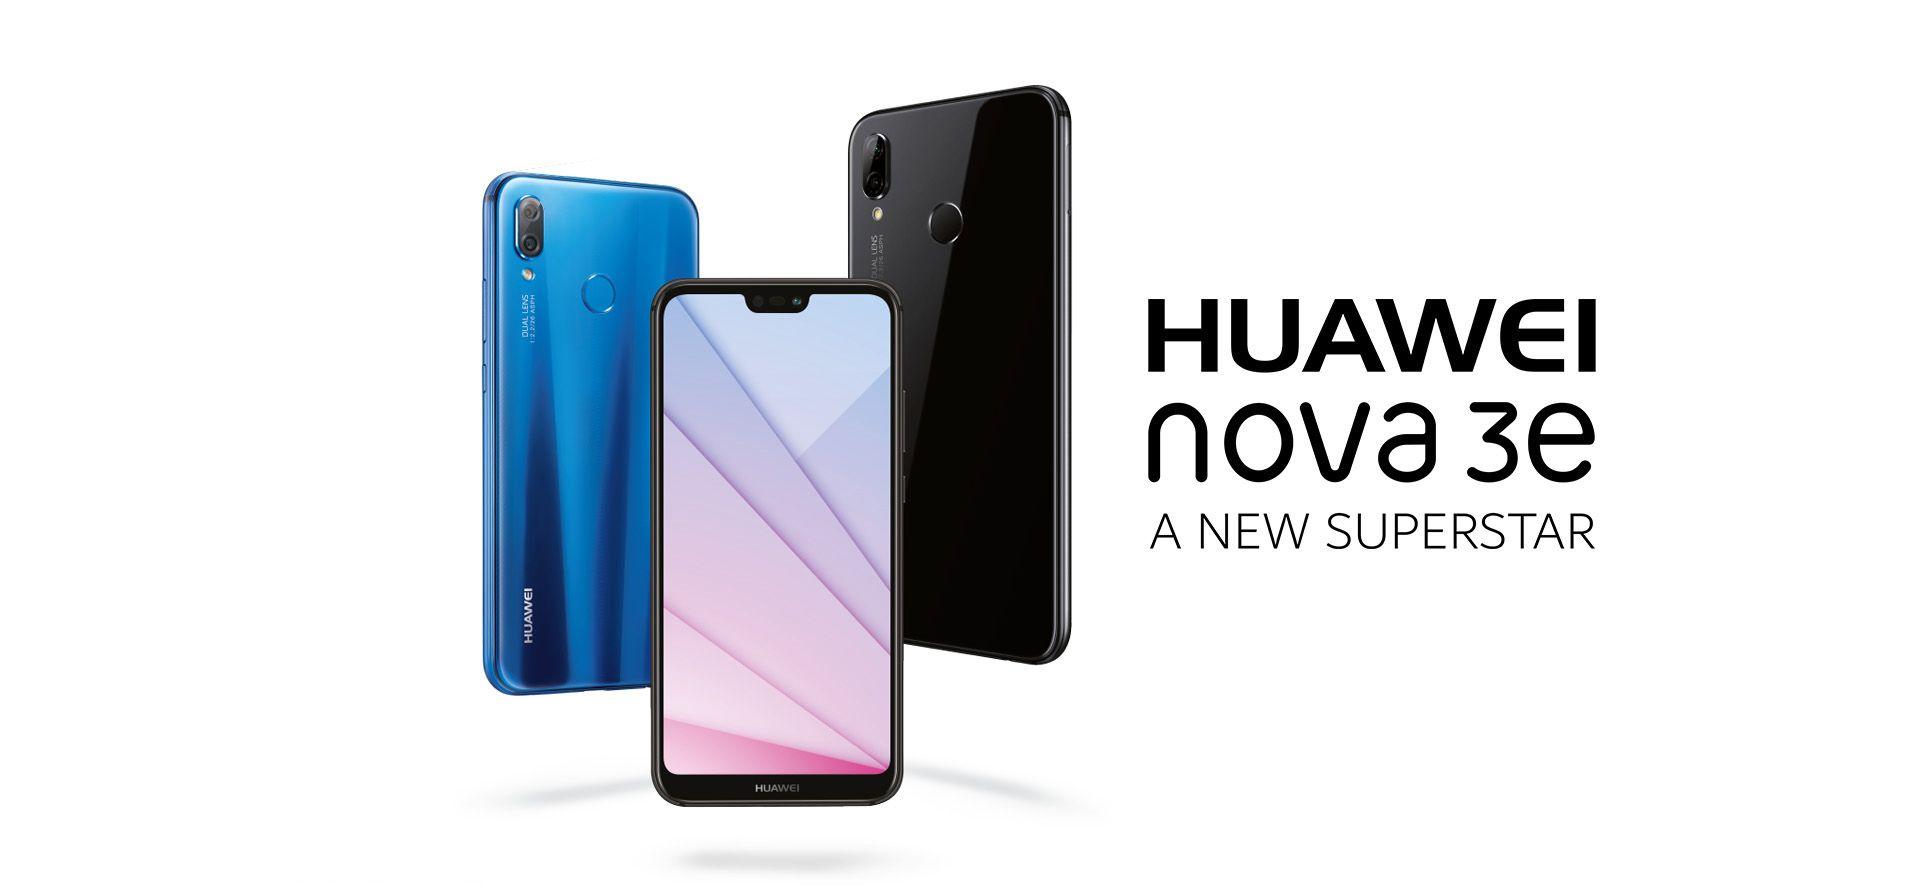 New Huawei Logo - HUAWEI nova 3e Smartphone Features and Reviews. HUAWEI UAE